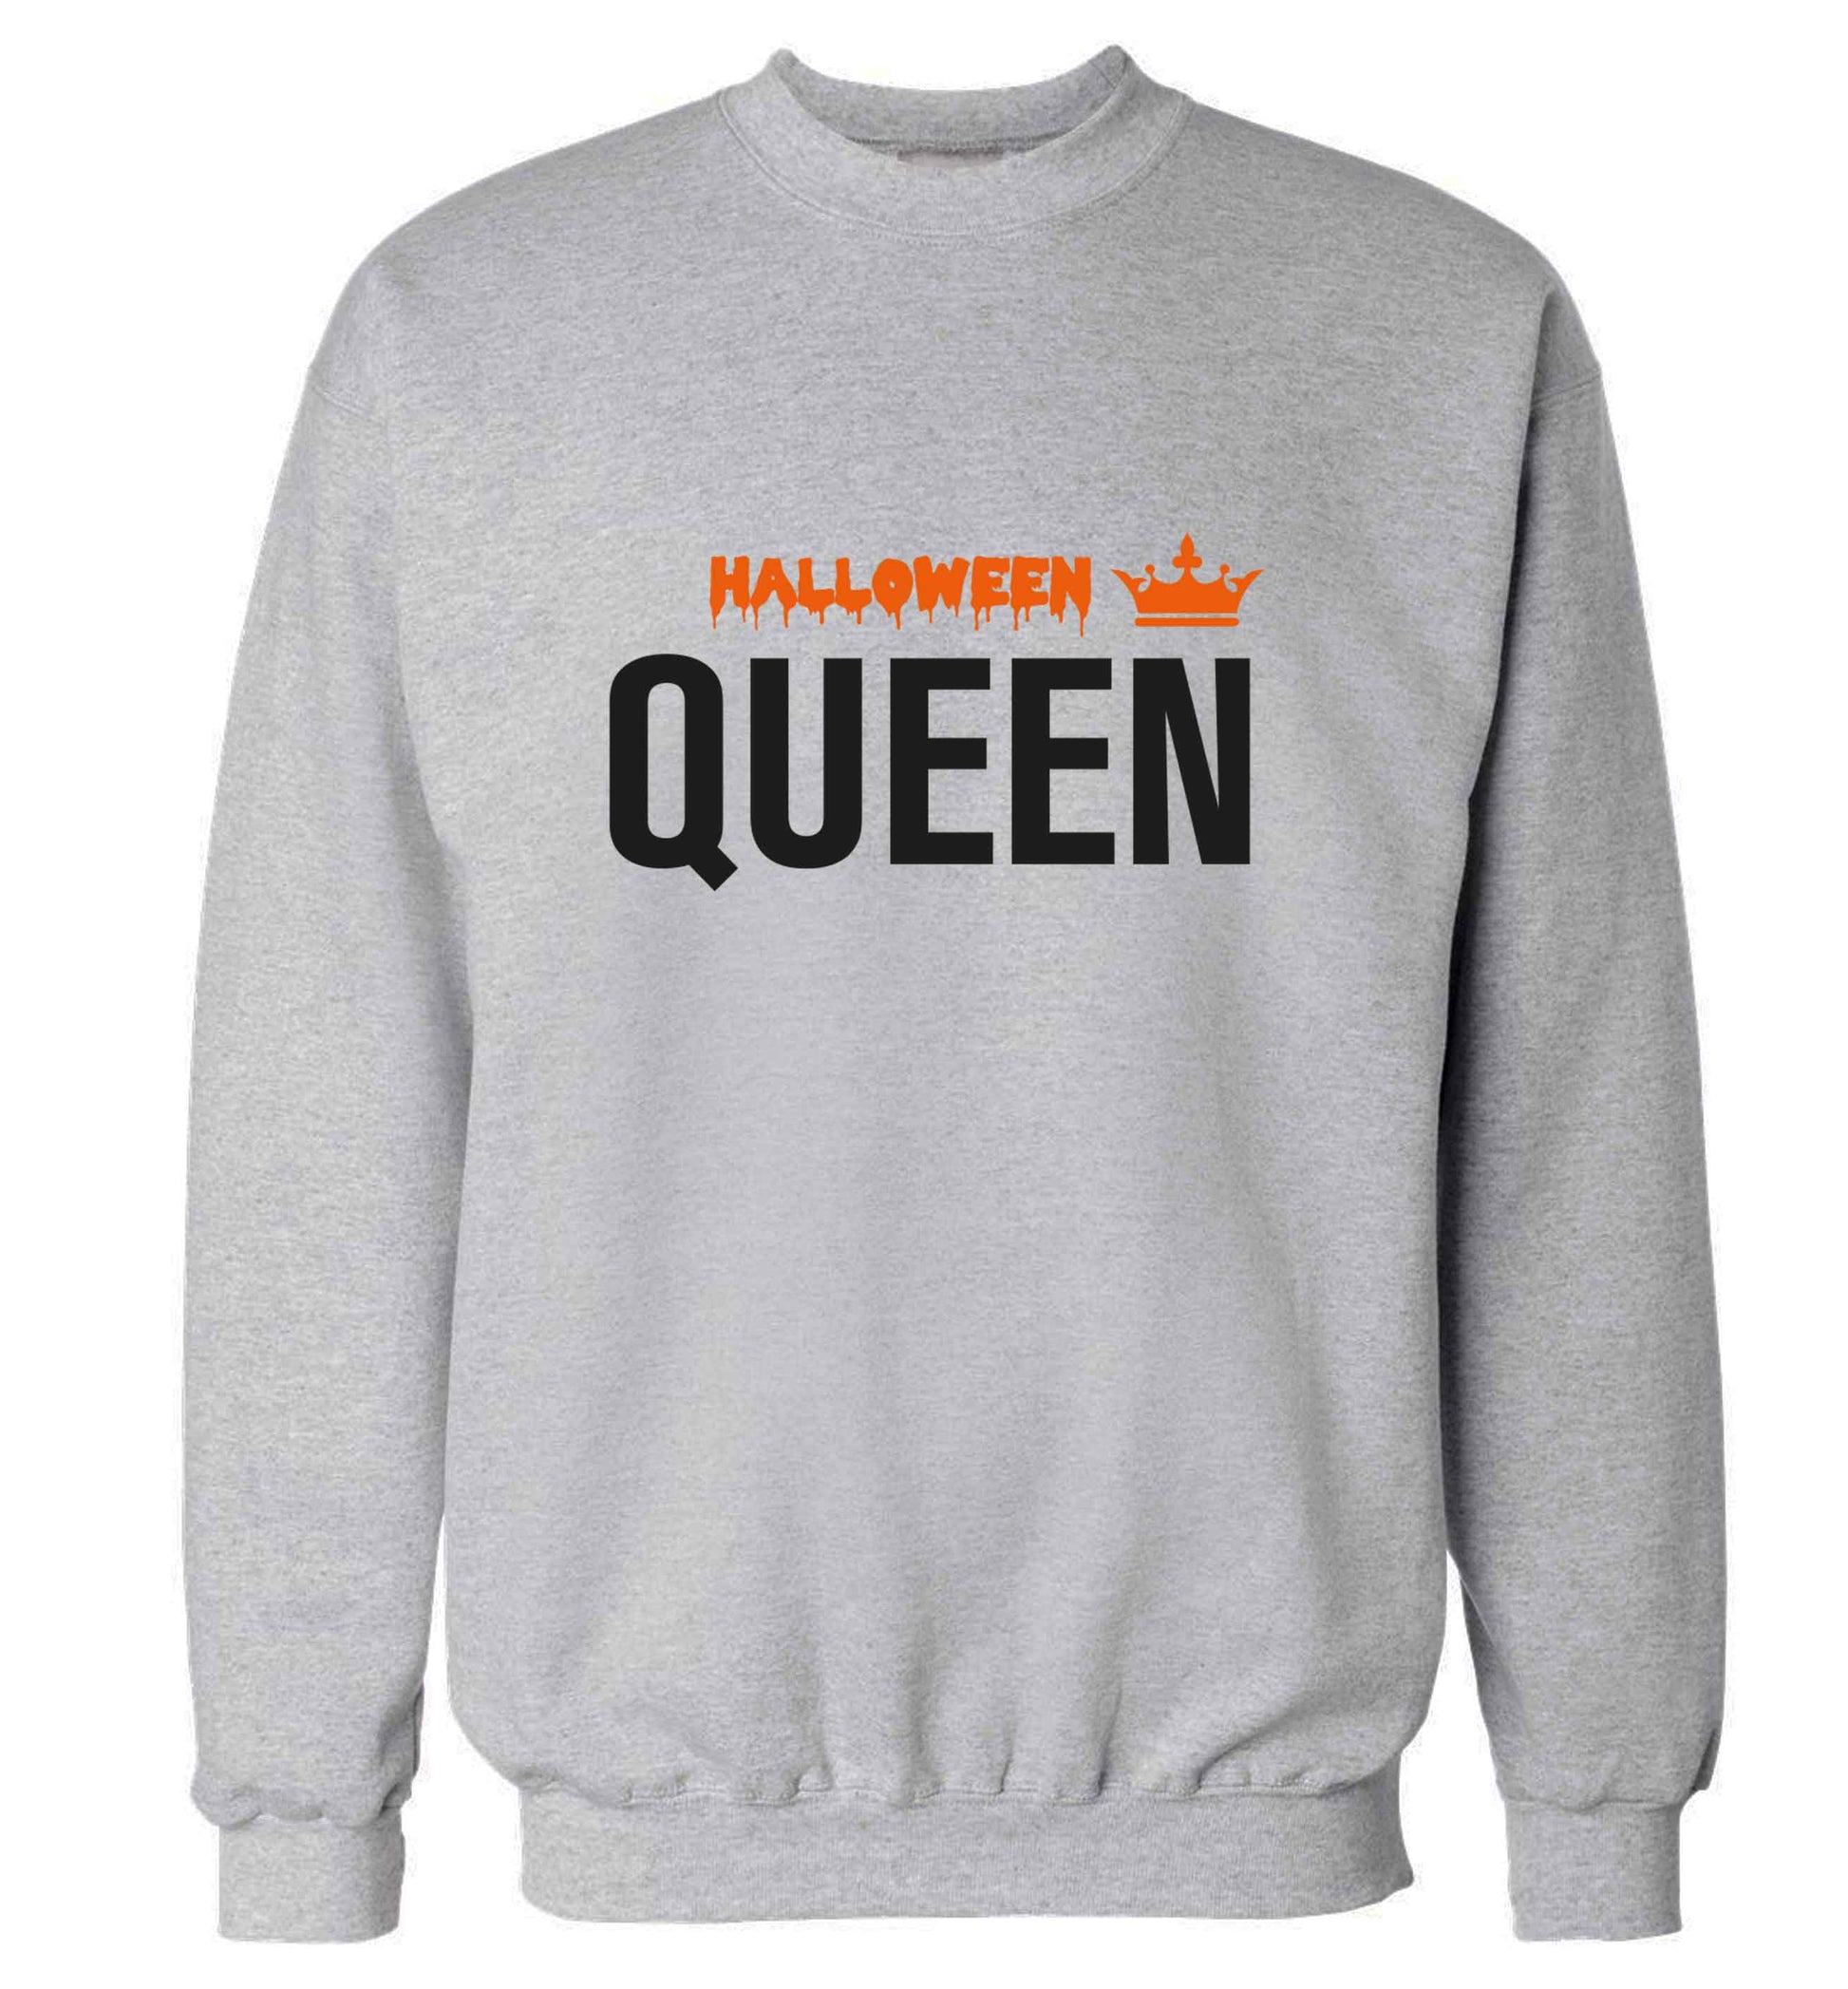 Halloween queen adult's unisex grey sweater 2XL